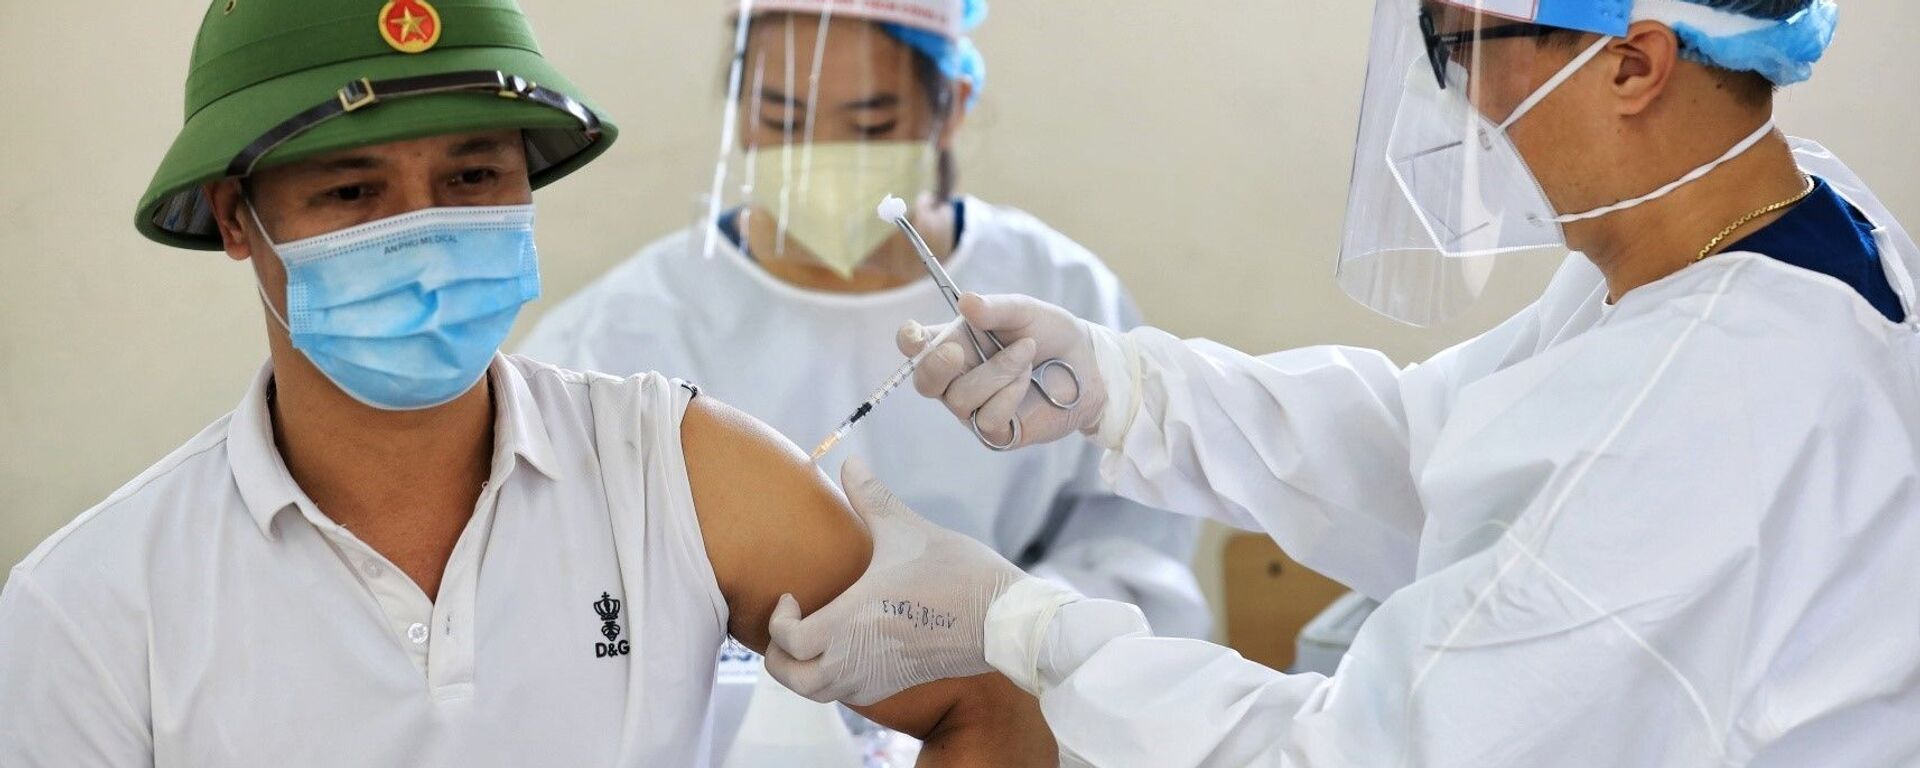 Nhân viên y tế tỉnh Bắc Giang tiến hành tiêm vaccine phòng COVID-19 cho người dân quận Long Biên - Sputnik Việt Nam, 1920, 09.09.2021